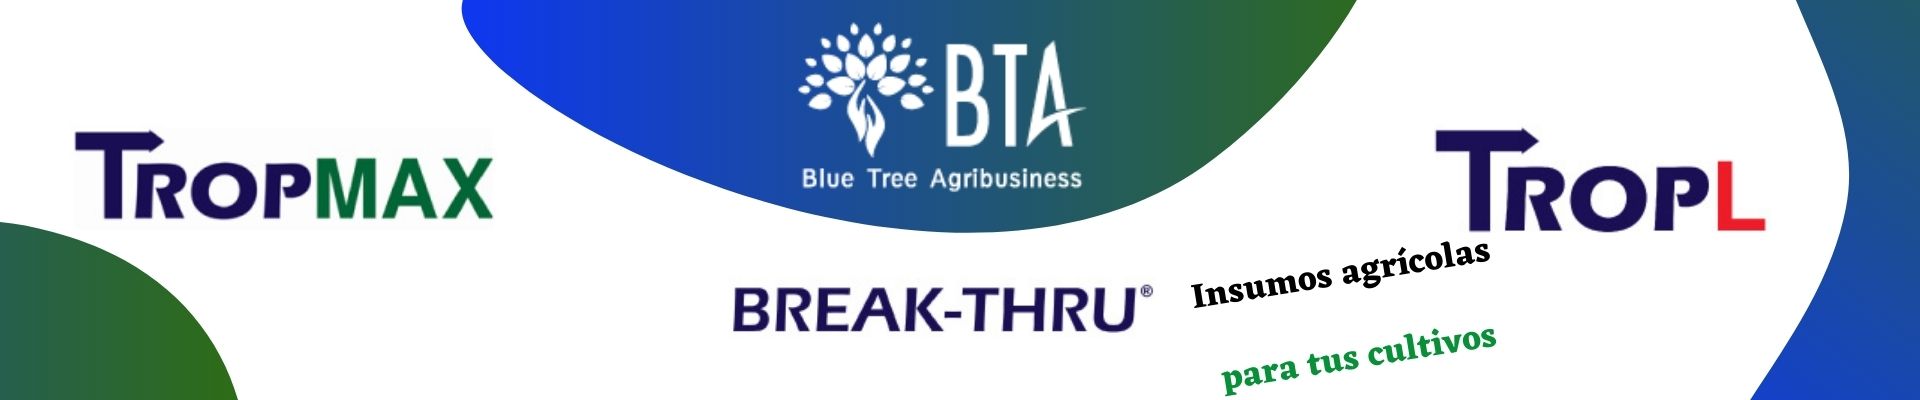 Cortesía de: BTA Blue Tree Agribusiness.